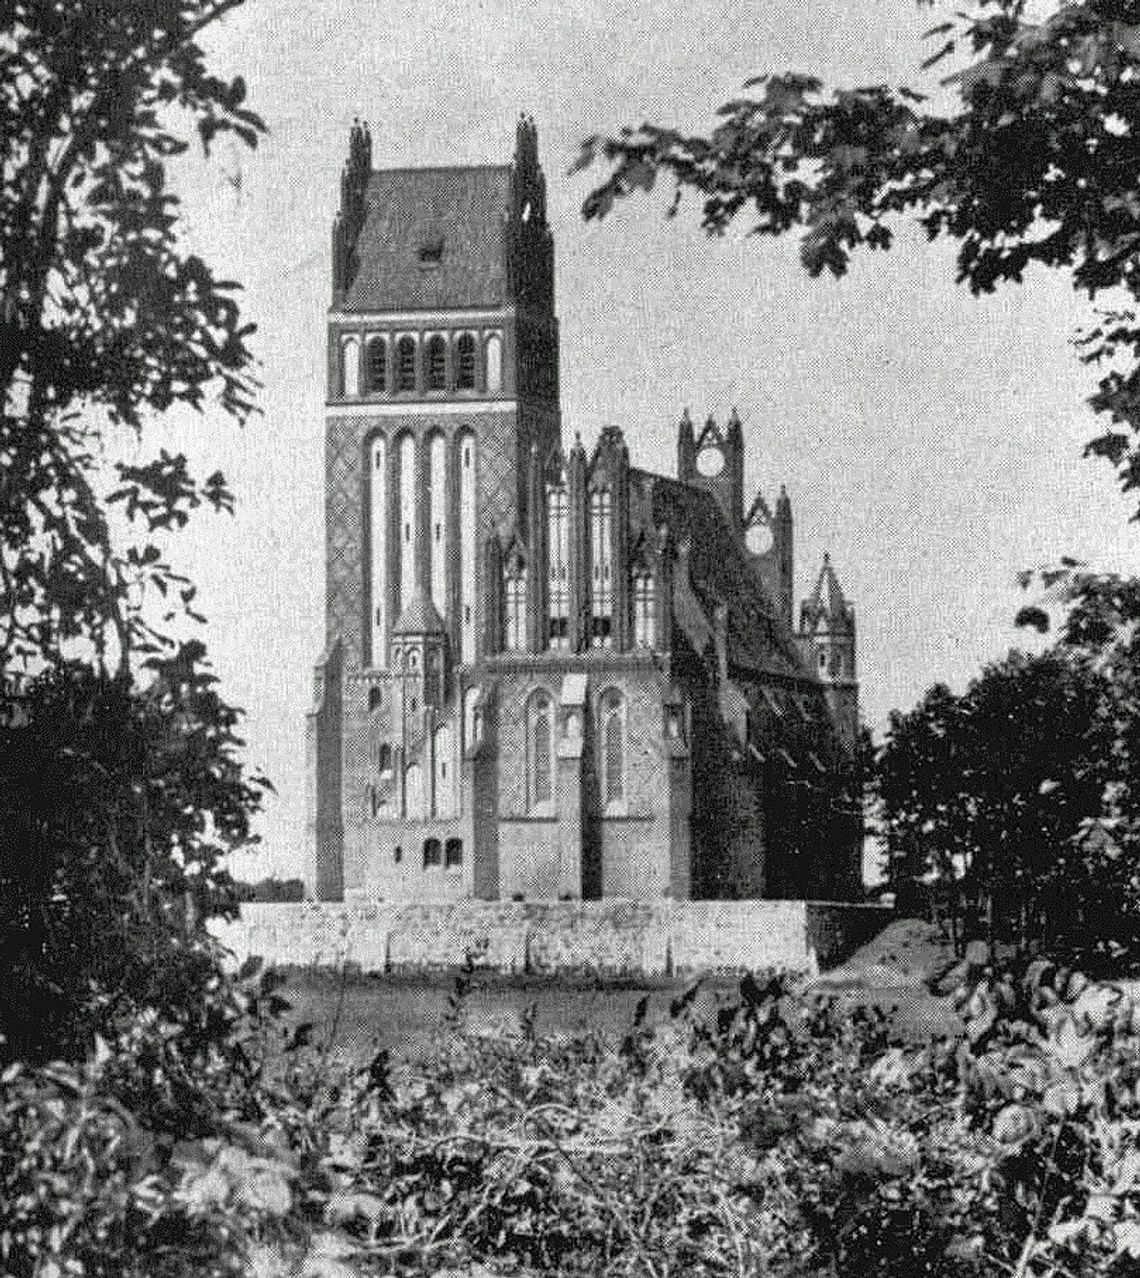 12 lipca 1913 roku wmurowano kamień węgielny pod kościół „Świątynia Pokoju” w Kadynach